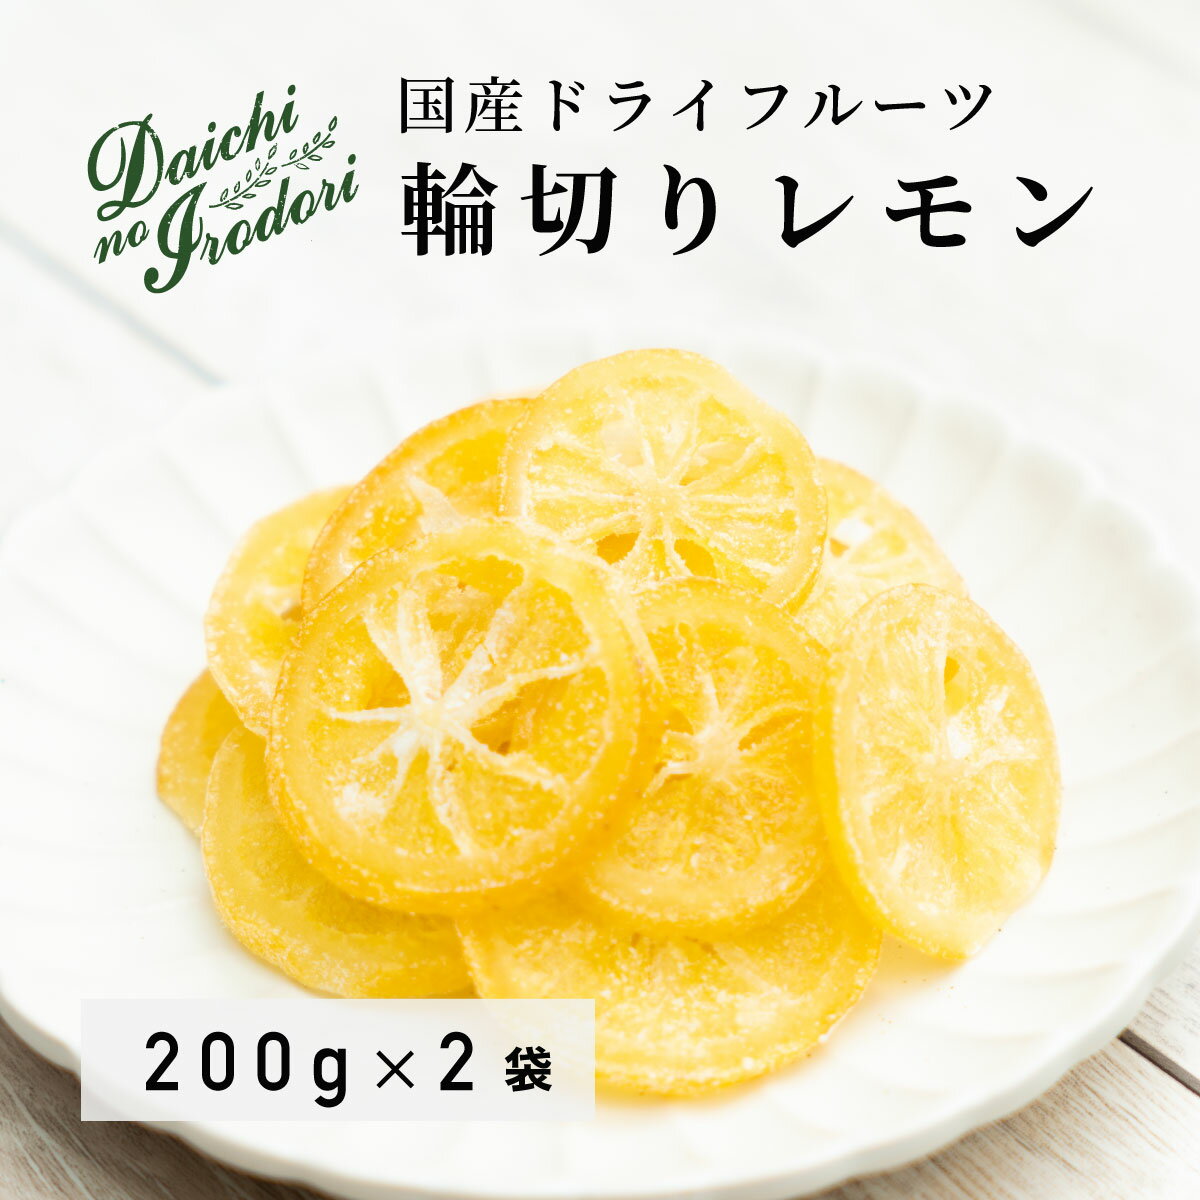 水果乾 日本產 檸檬 果乾檸檬 圓片檸檬 200g x 2包 常溫保存 使用南信州菓子工房原料 夾鏈袋裝 日本必買 | 日本樂天熱銷